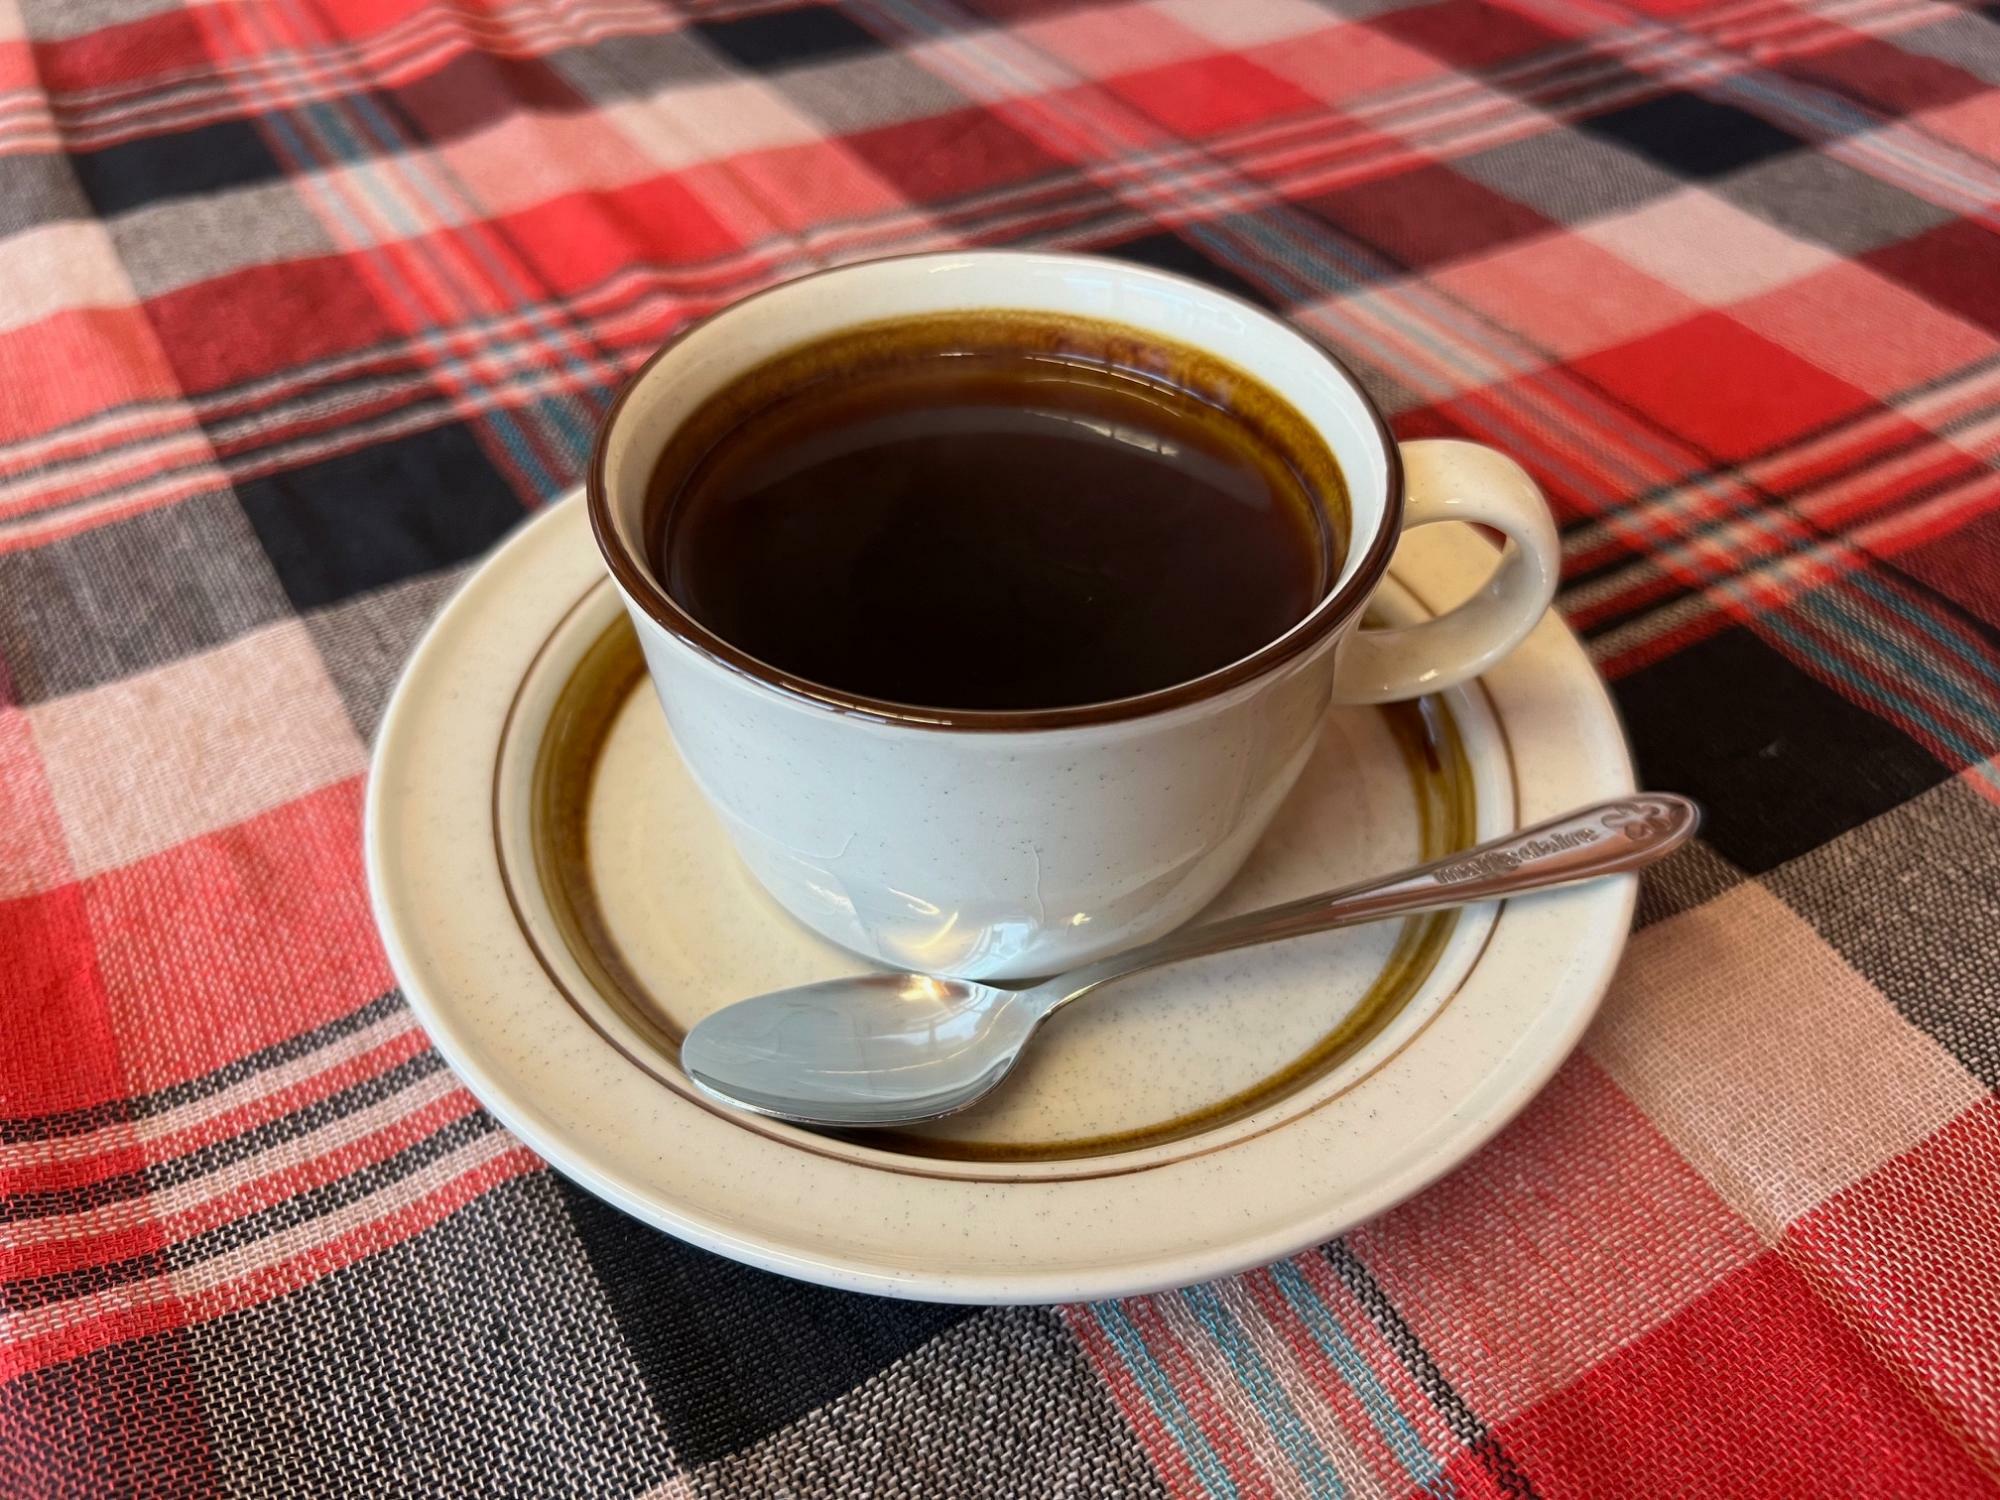 「コーヒー」「紅茶」各400円